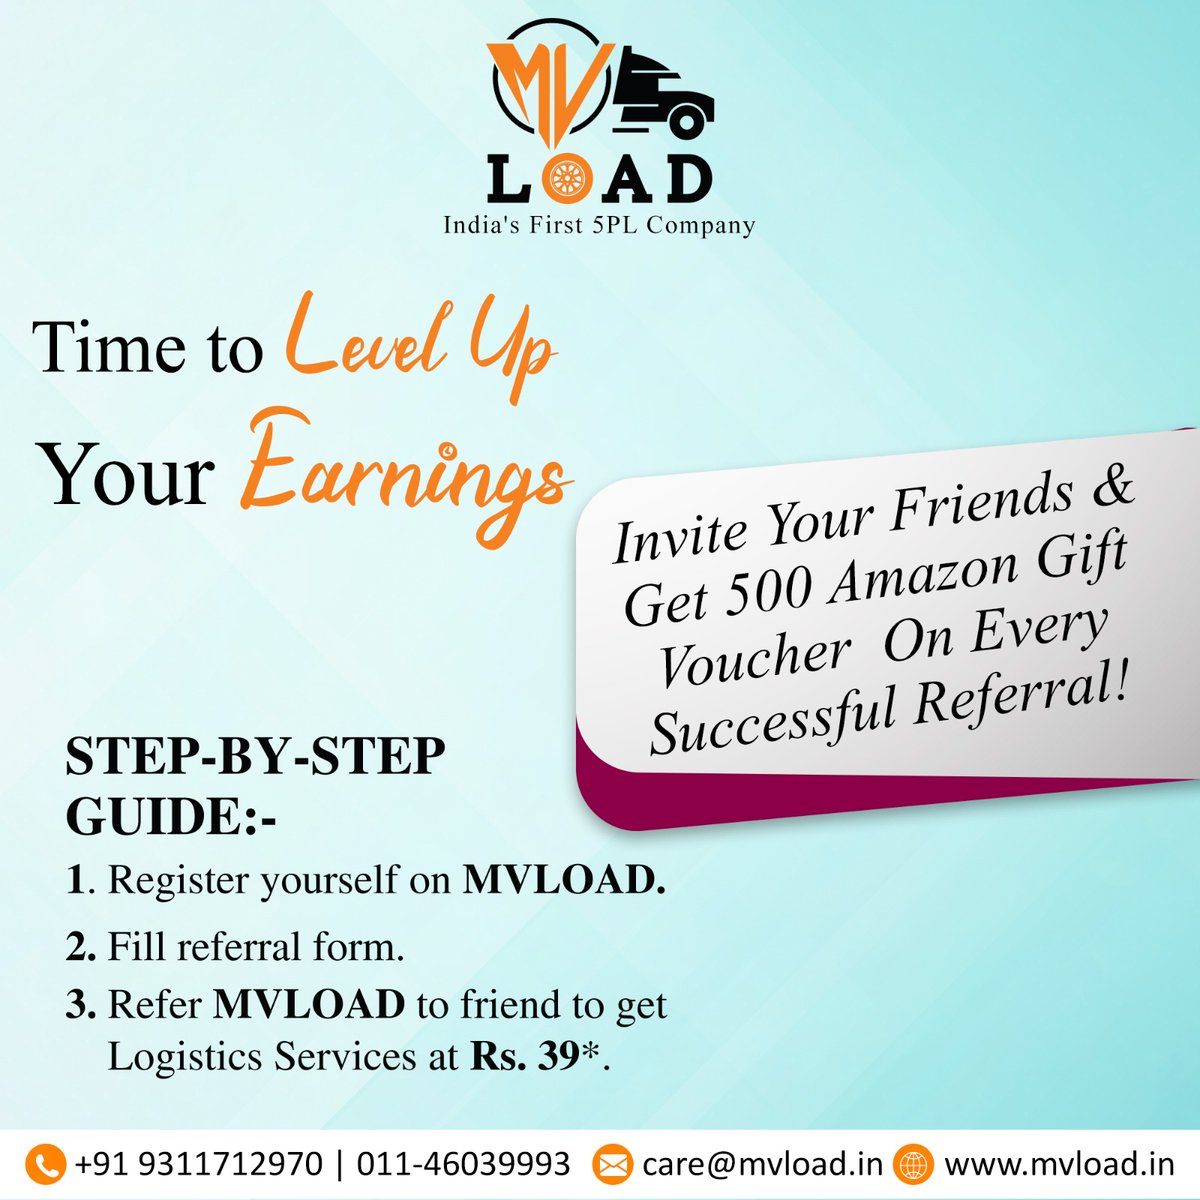 𝐘𝐨𝐮 𝐦𝐚𝐲 𝐞𝐚𝐫𝐧 𝐦𝐨𝐧𝐞𝐲 𝐛𝐲 𝐫𝐞𝐜𝐨𝐦𝐦𝐞𝐧𝐝𝐢𝐧𝐠 𝐩𝐞𝐨𝐩𝐥𝐞 Amazing deal! Follow the steps below to earn a Rs. 500 Amazon Gift Card for each successful referral!! Referral link: bit.ly/3Ji3hHG #ReferandEarn #giftvoucher #earnmoney #referandearnprogram